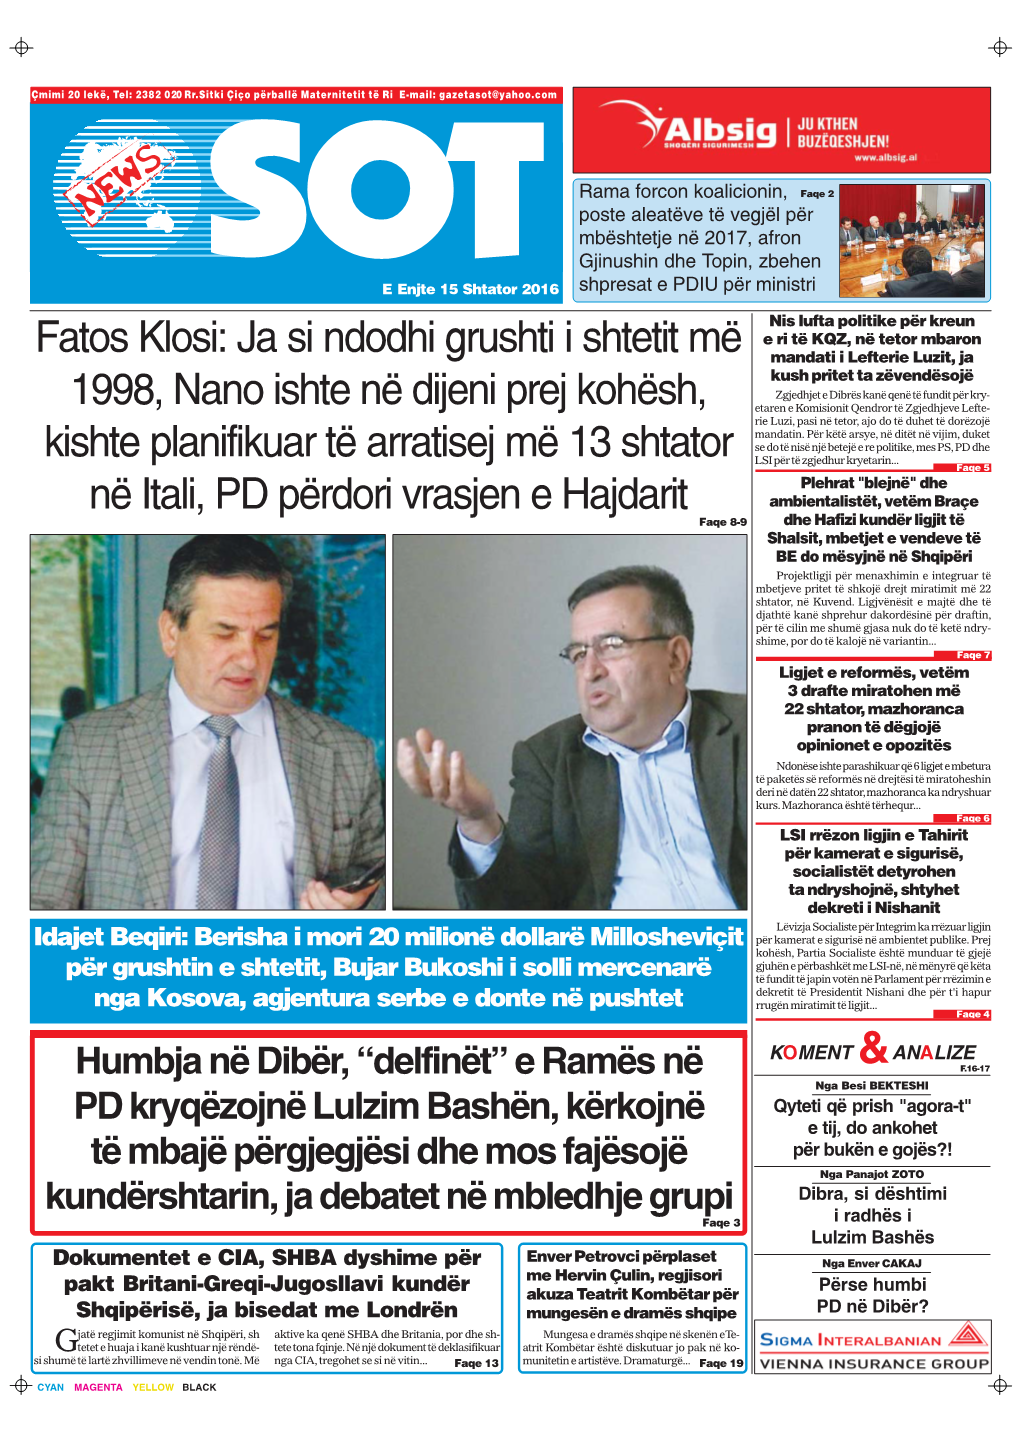 Fatos Klosi: Ja Si Ndodhi Grushti I Shtetit Më 1998, Nano Ishte Në Dijeni Prej Kohësh, Kishte Planifikuar Të Arratisej Më 1